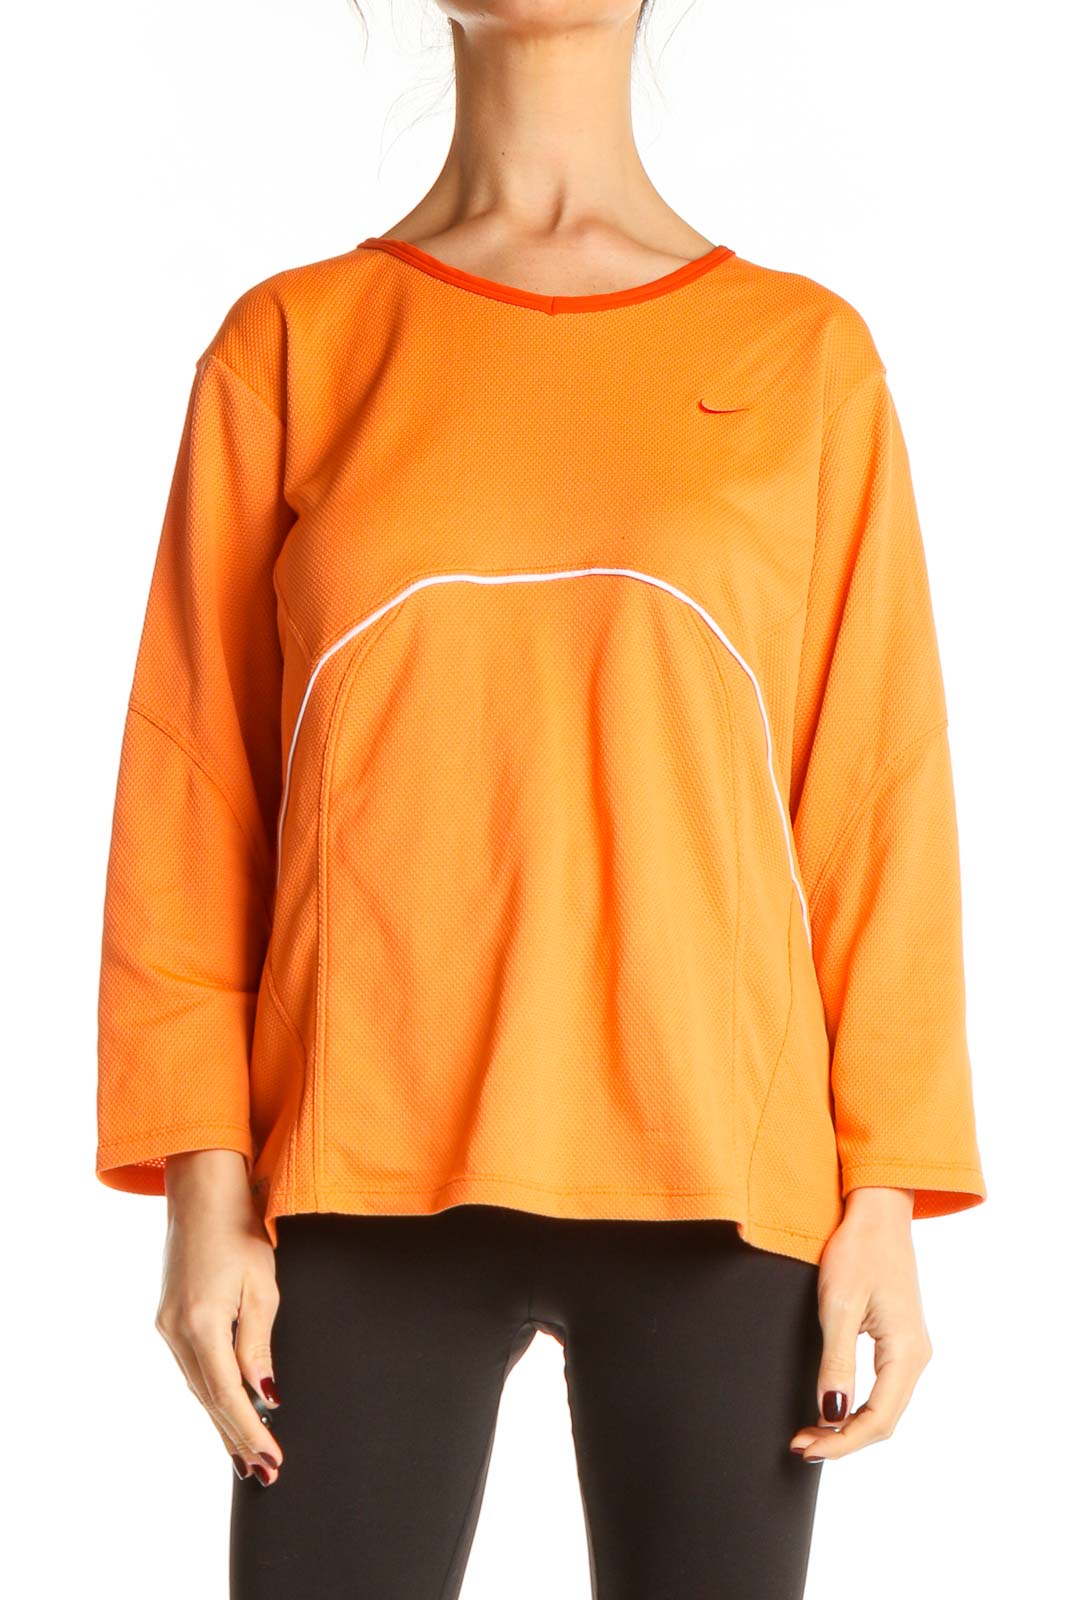 Orange Activewear Top Front